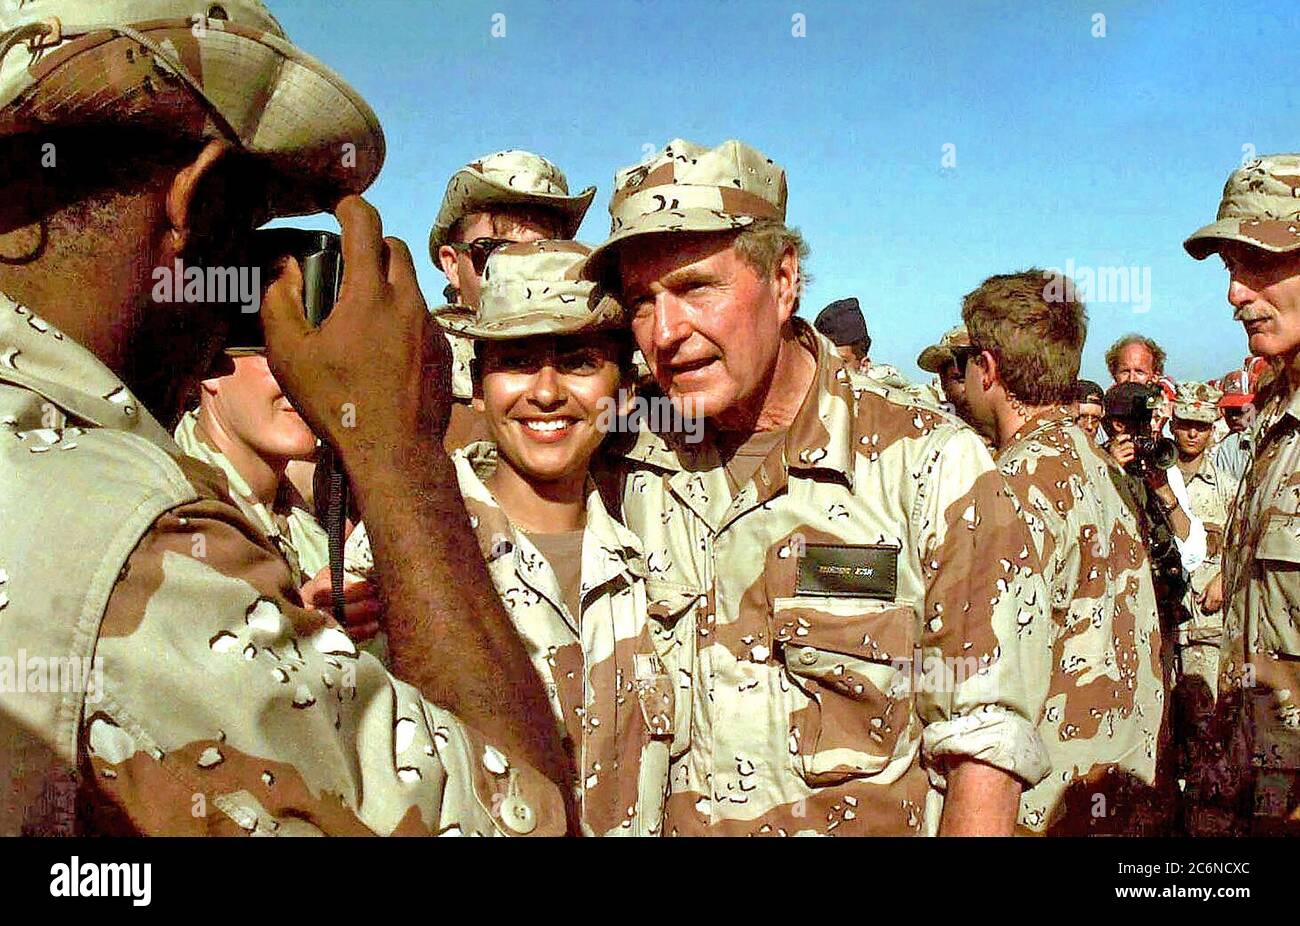 1993 - Medio de cerca del Presidente americano Bush teniendo tomé para posar para una foto con una mujer no identificada de los miembros de las fuerzas de los EE.UU. asignados a la misión en Somalia. Un gran número de otros miembros de la fuerza se han reunido en torno al Presidente. El Presidente visitó Somalia es mostrar gratitud a aquellos que participan en la misión de la operación Restaurar la esperanza. Foto de stock